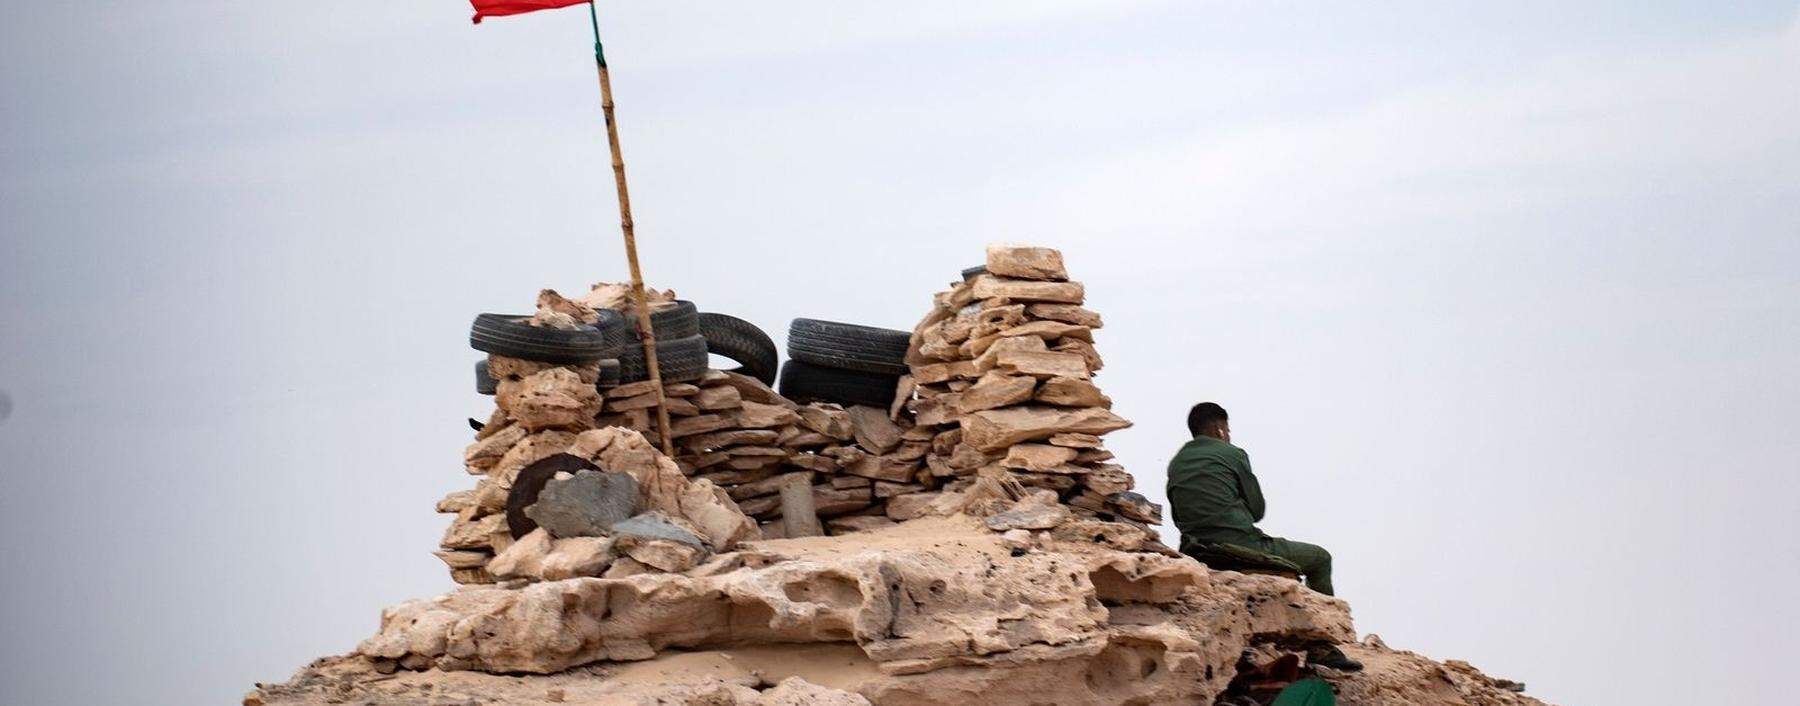 Militärposten in der Westsahara. Die Kämpfe zwischen Marokkos Armee und der Polisario könnten wieder aufflammen.